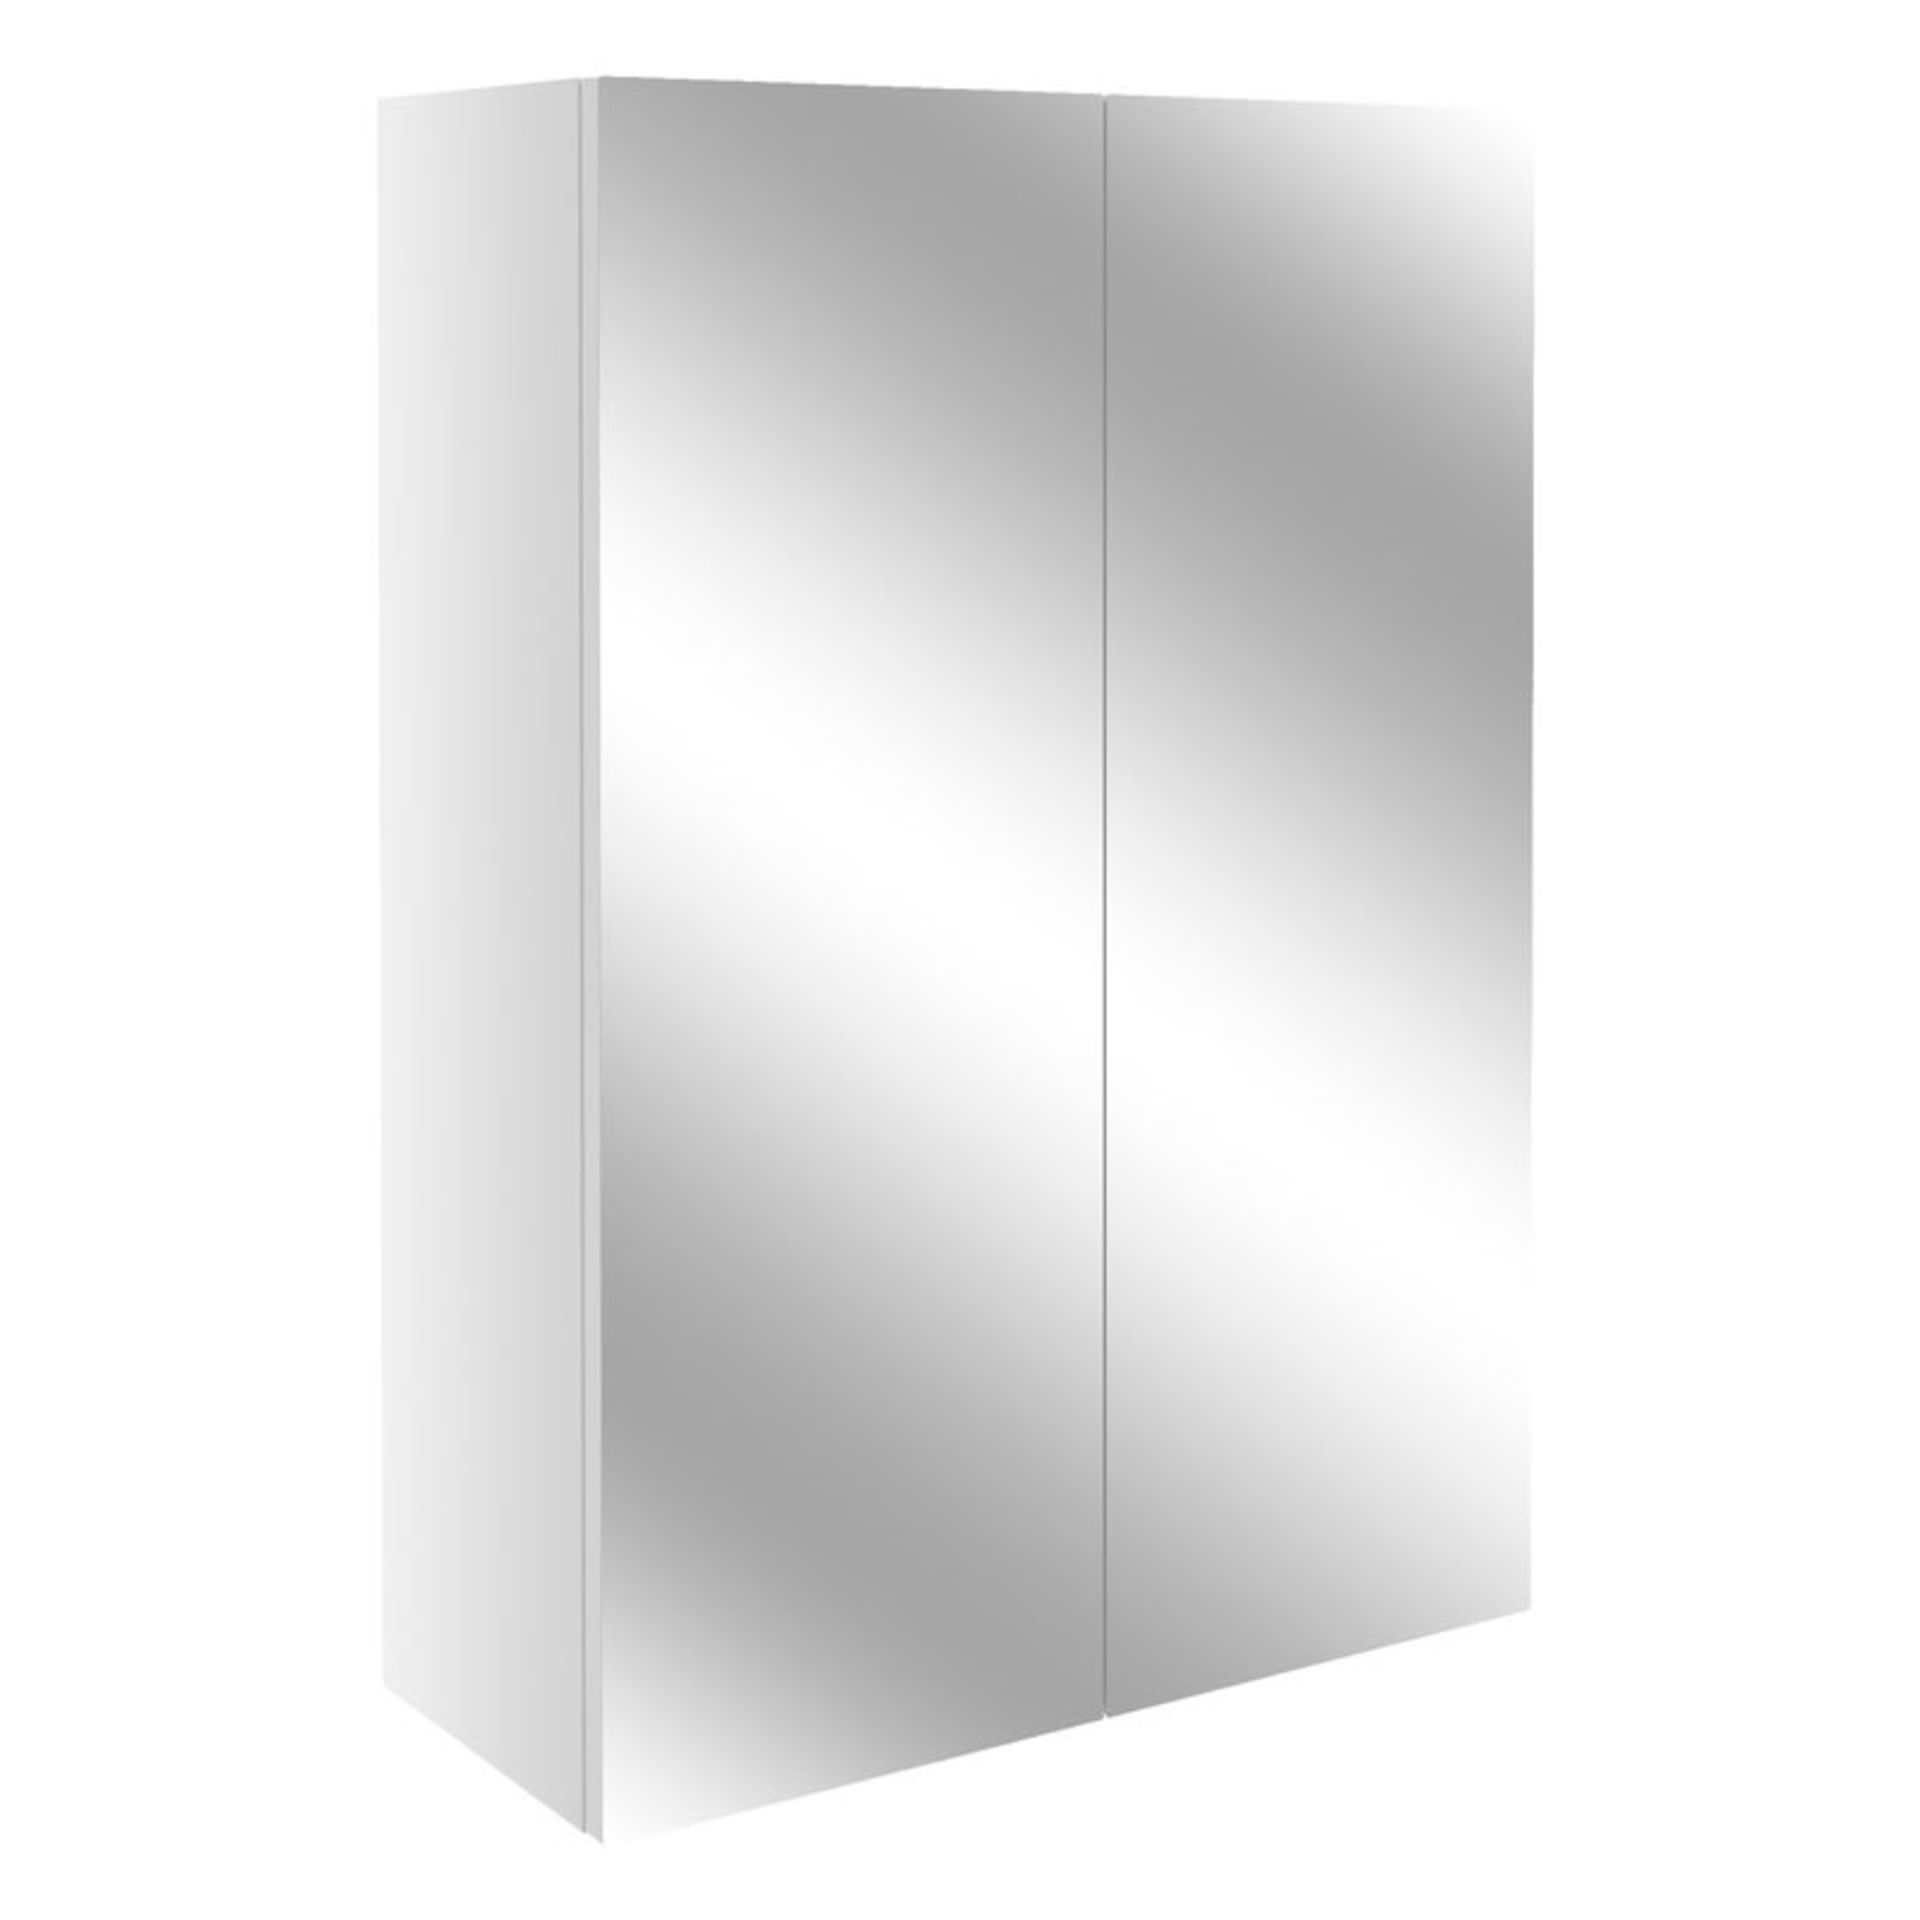 New (D46) 500 White Gloss 2 Door Mirrored Bathroom Cabinet. High Double Door Bathroom Cabinet ...